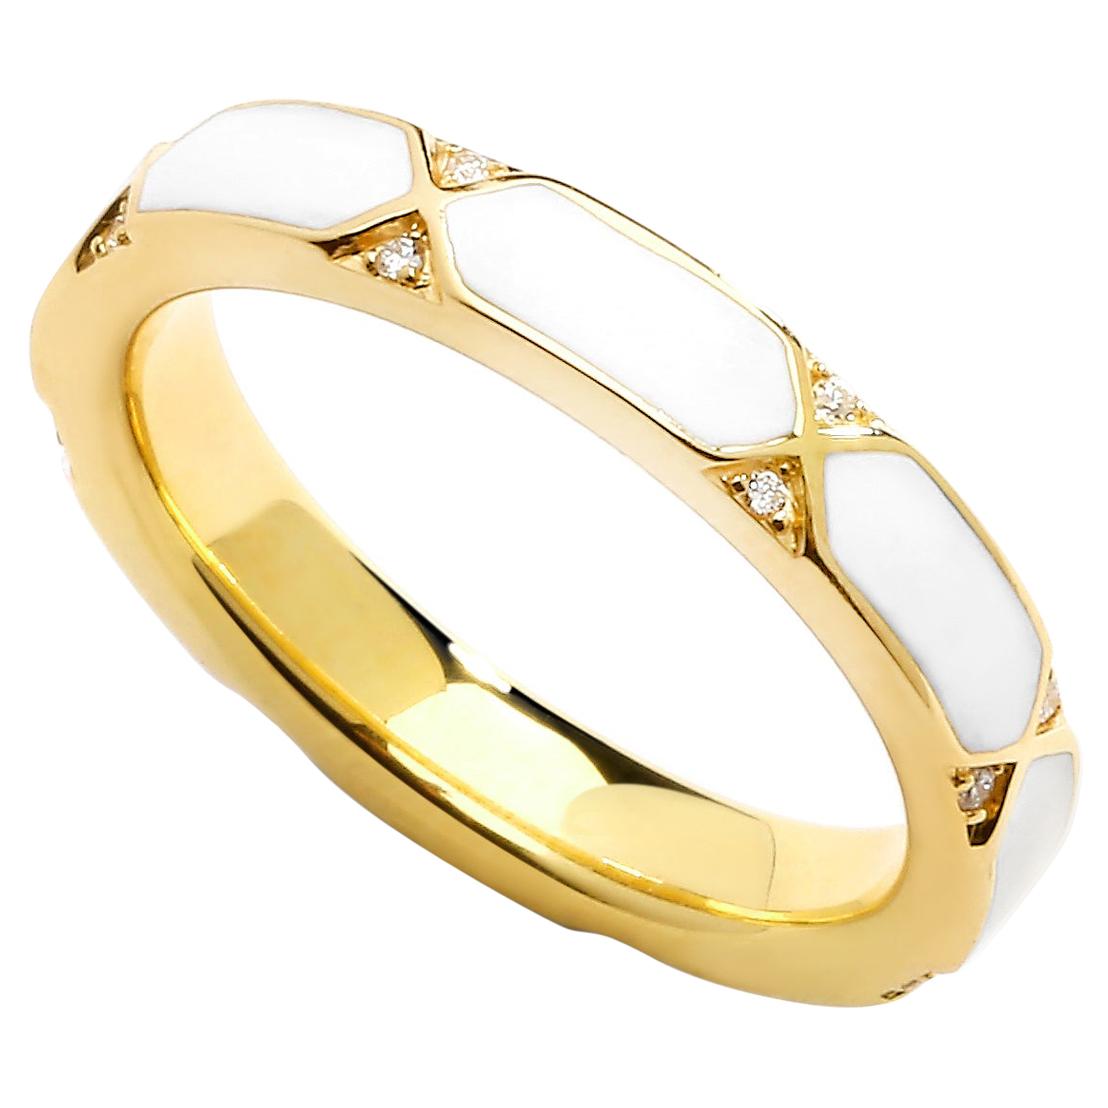 Syna Yellow Gold White Enamel Ring with Diamonds